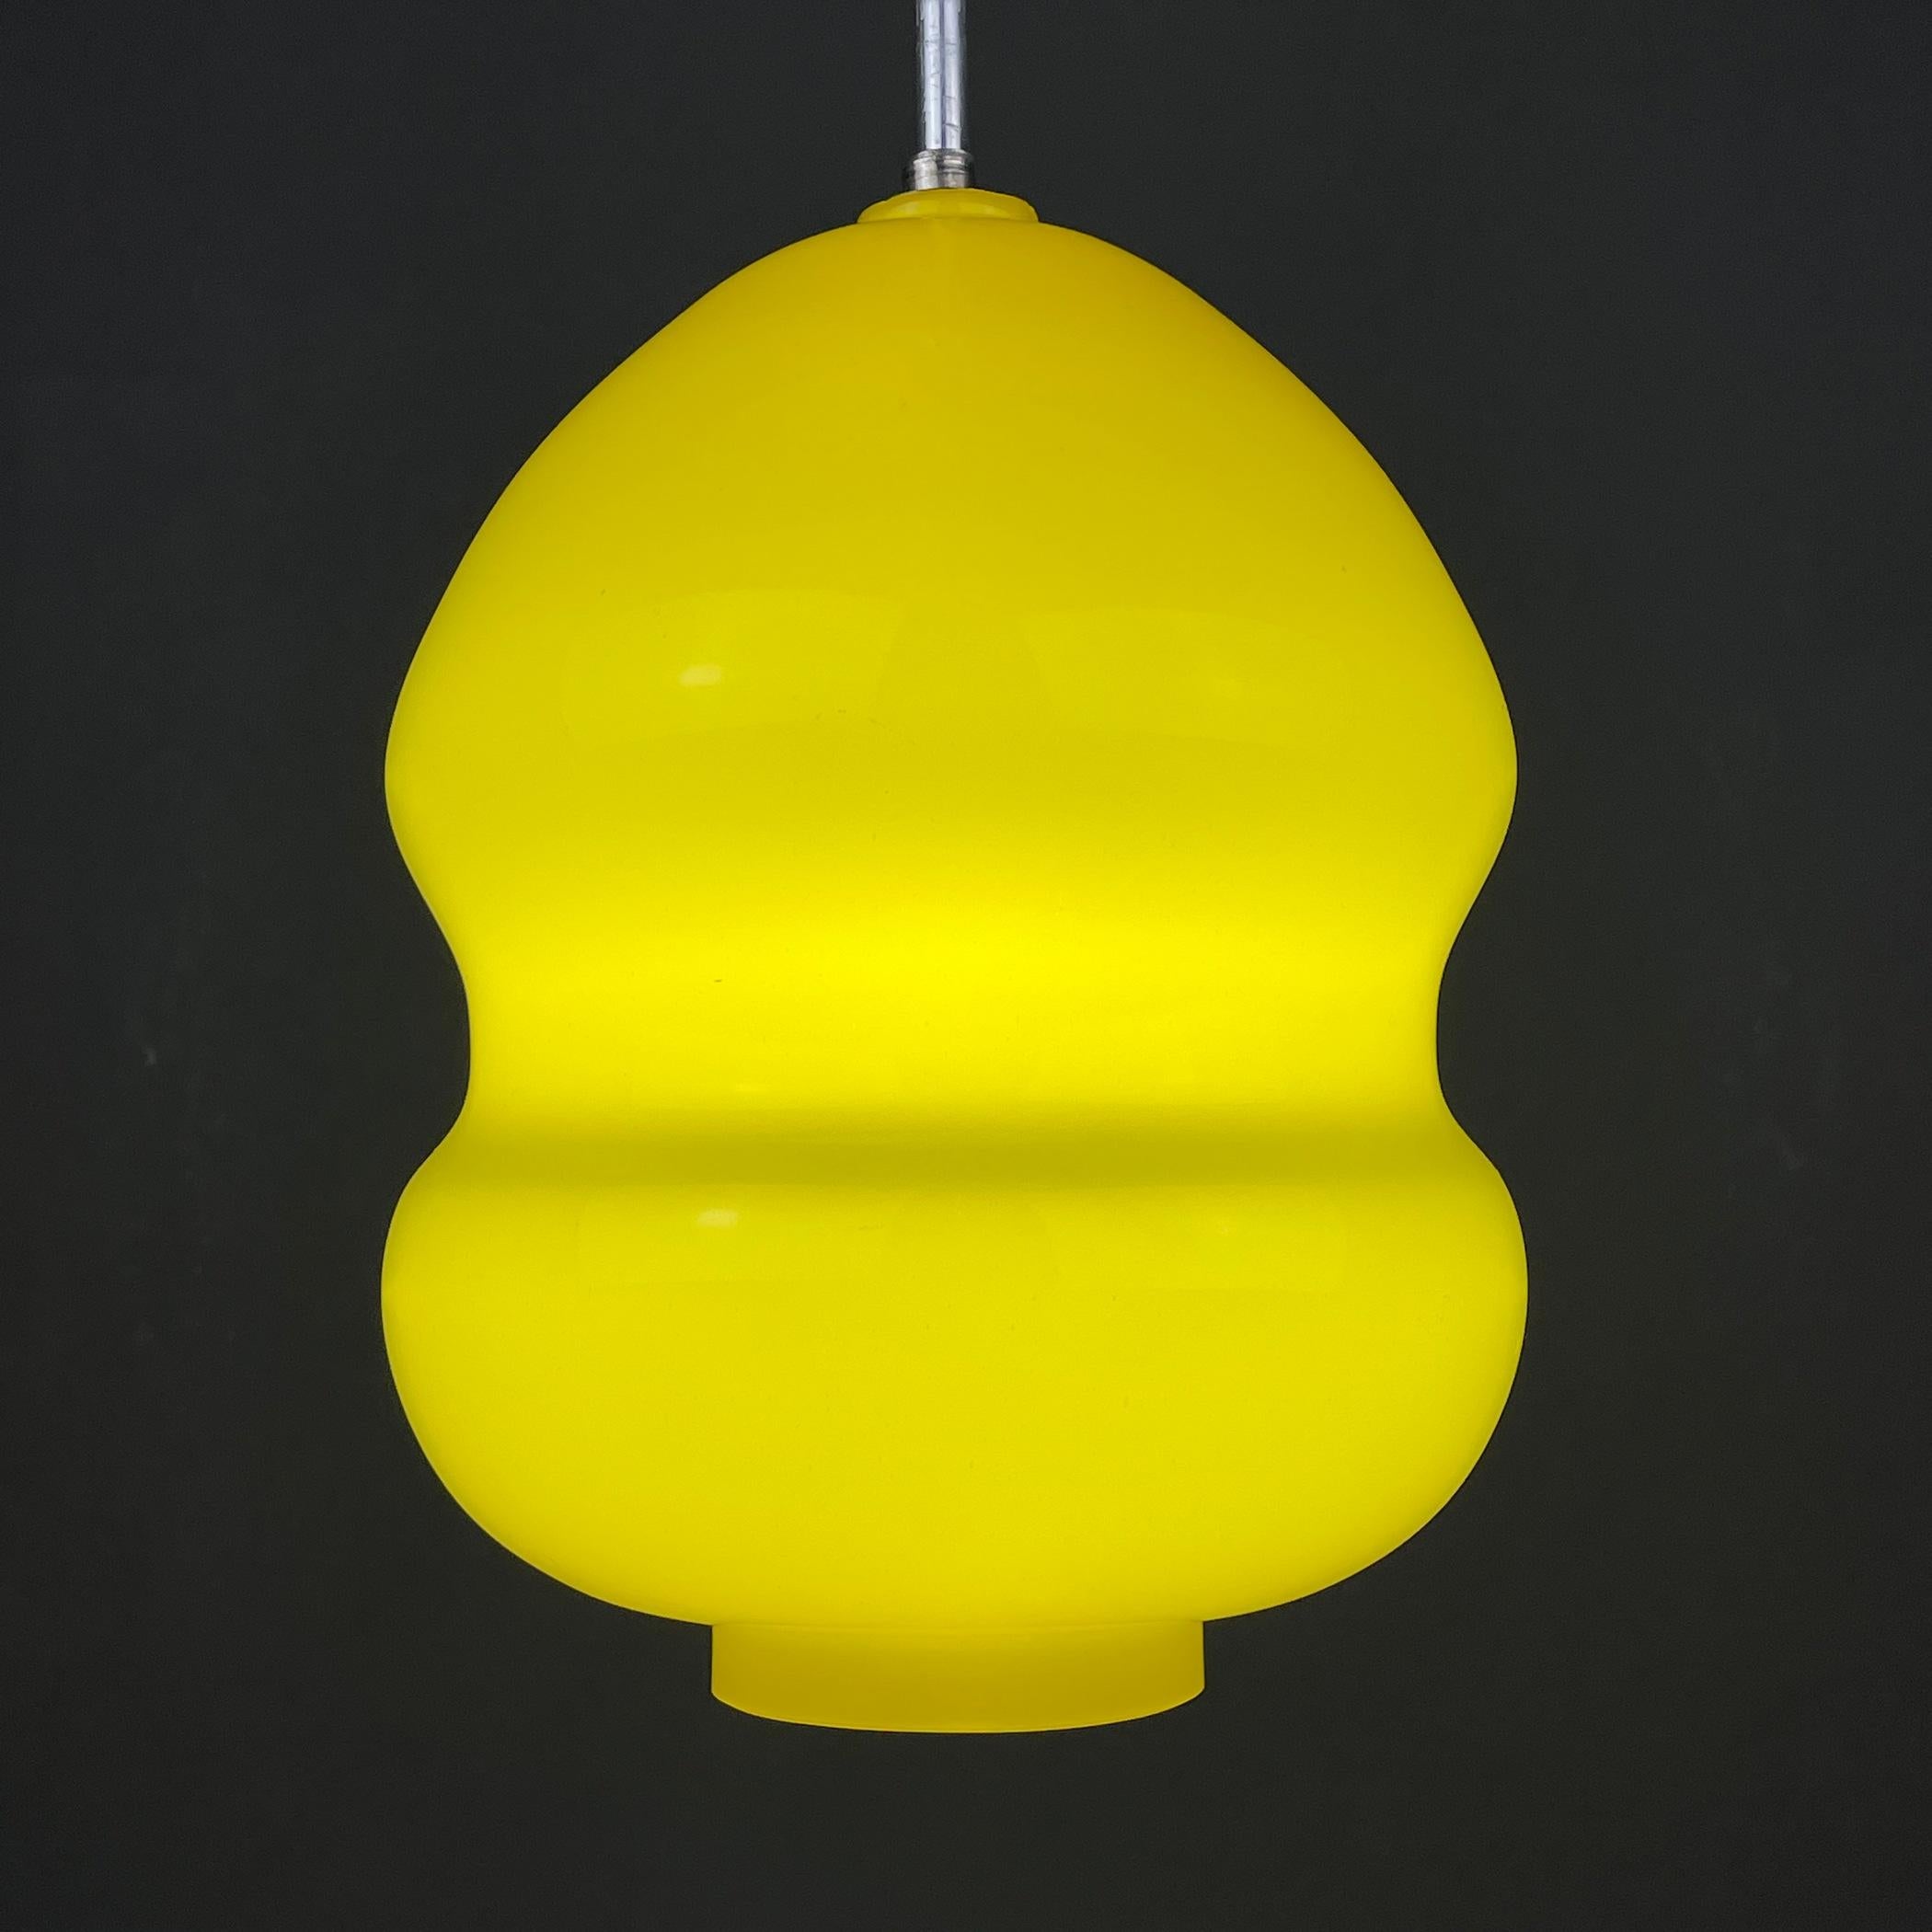 Vintage-Pendelleuchte aus gelbem Glas, hergestellt in Jugoslawien in den 1970er Jahren. Die schöne gelbe Farbe schafft Weichheit, Gemütlichkeit und Komfort. Daher ist es für Kinderzimmer, Schlafzimmer und Wohnzimmer geeignet. Benötigt eine Standard